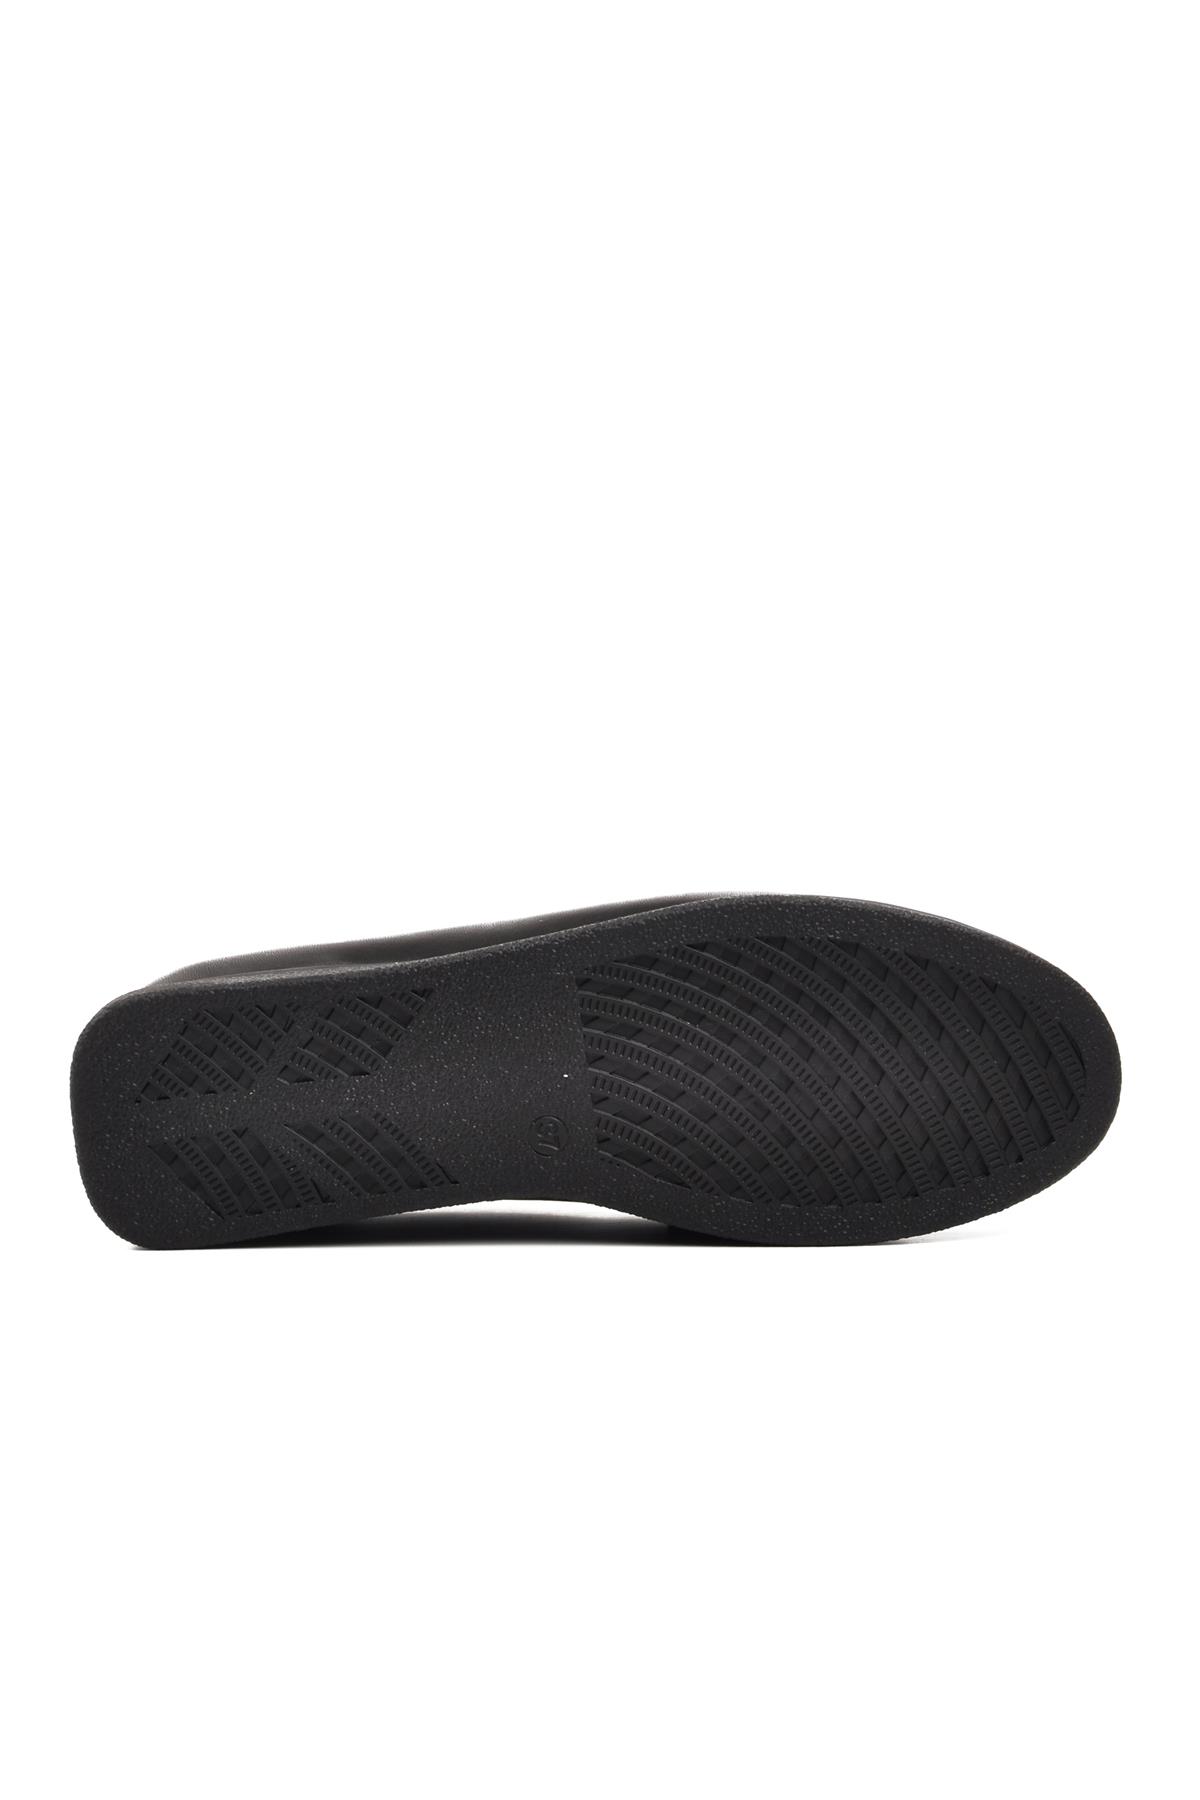 Ayakmod 44280 Siyah Hakiki Deri Kadın Loafer Ayakkabı Ayakmod Kadın Casual Ayakkabı